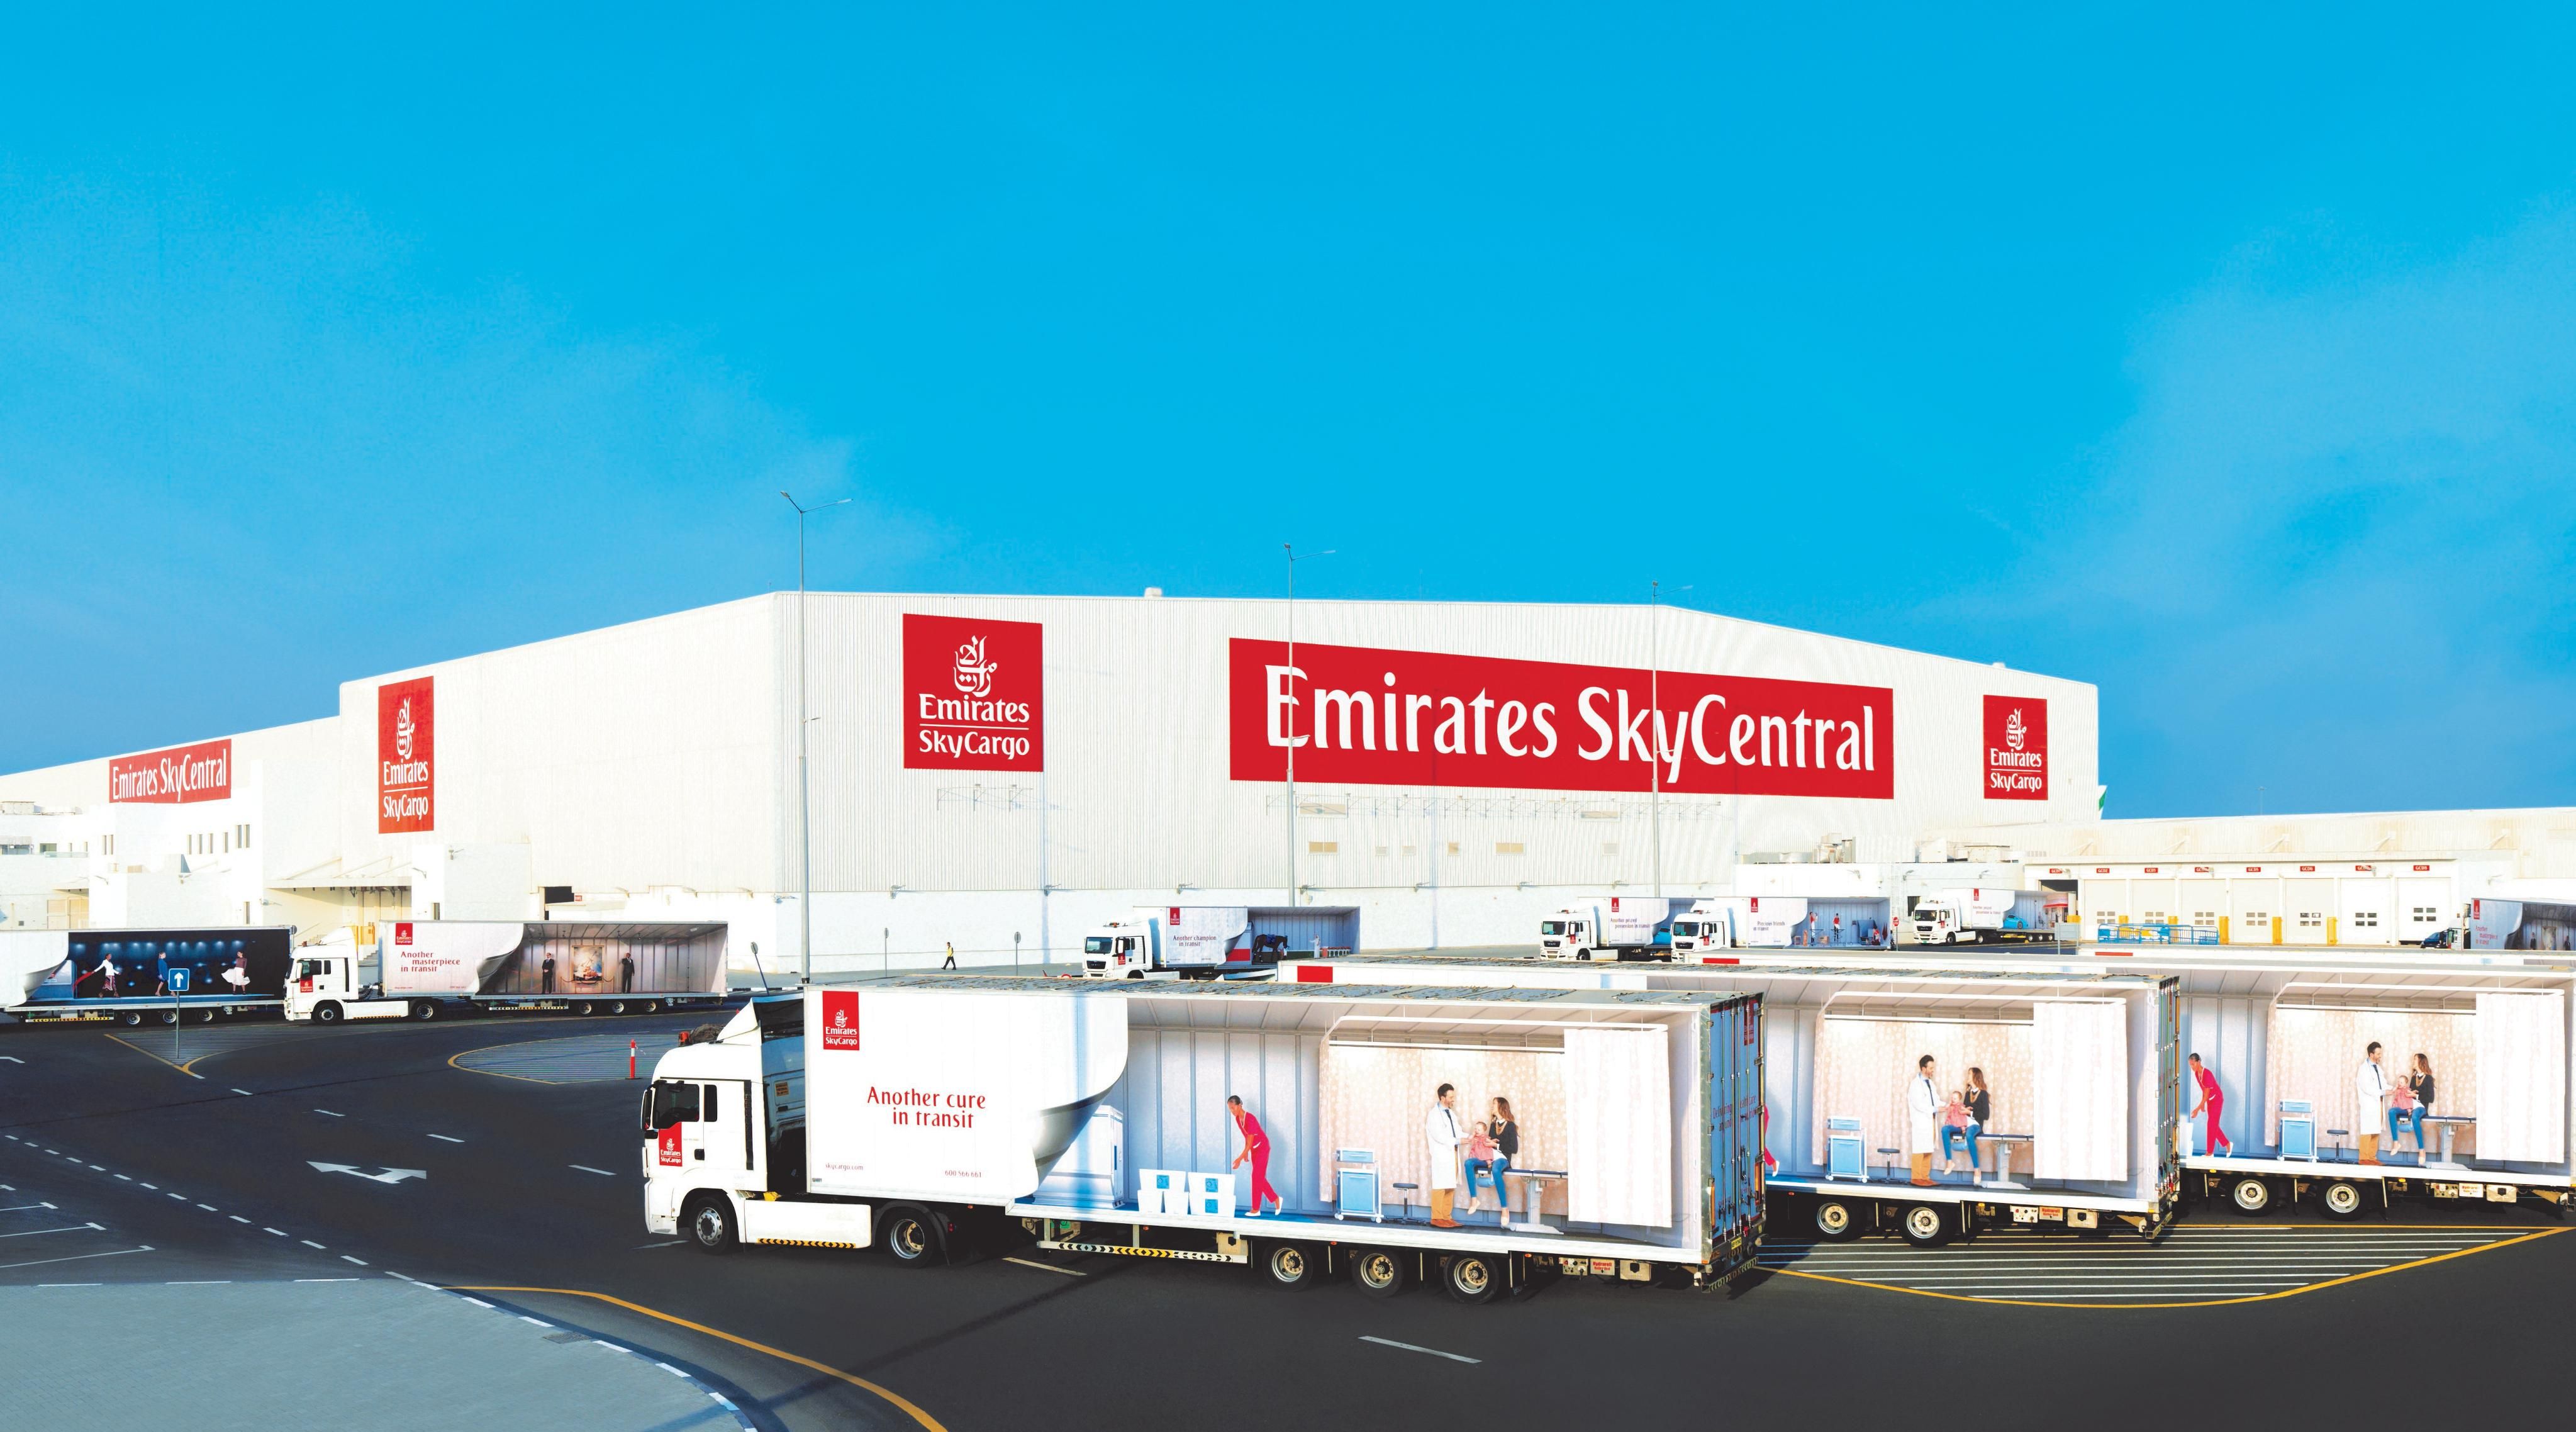 امارات اسکائی کارگو کوویڈ19 ویکسین کی عالمی تقسیم کے لئے سب سے بڑا ائیر کارگو مرکز قائم کرے گا